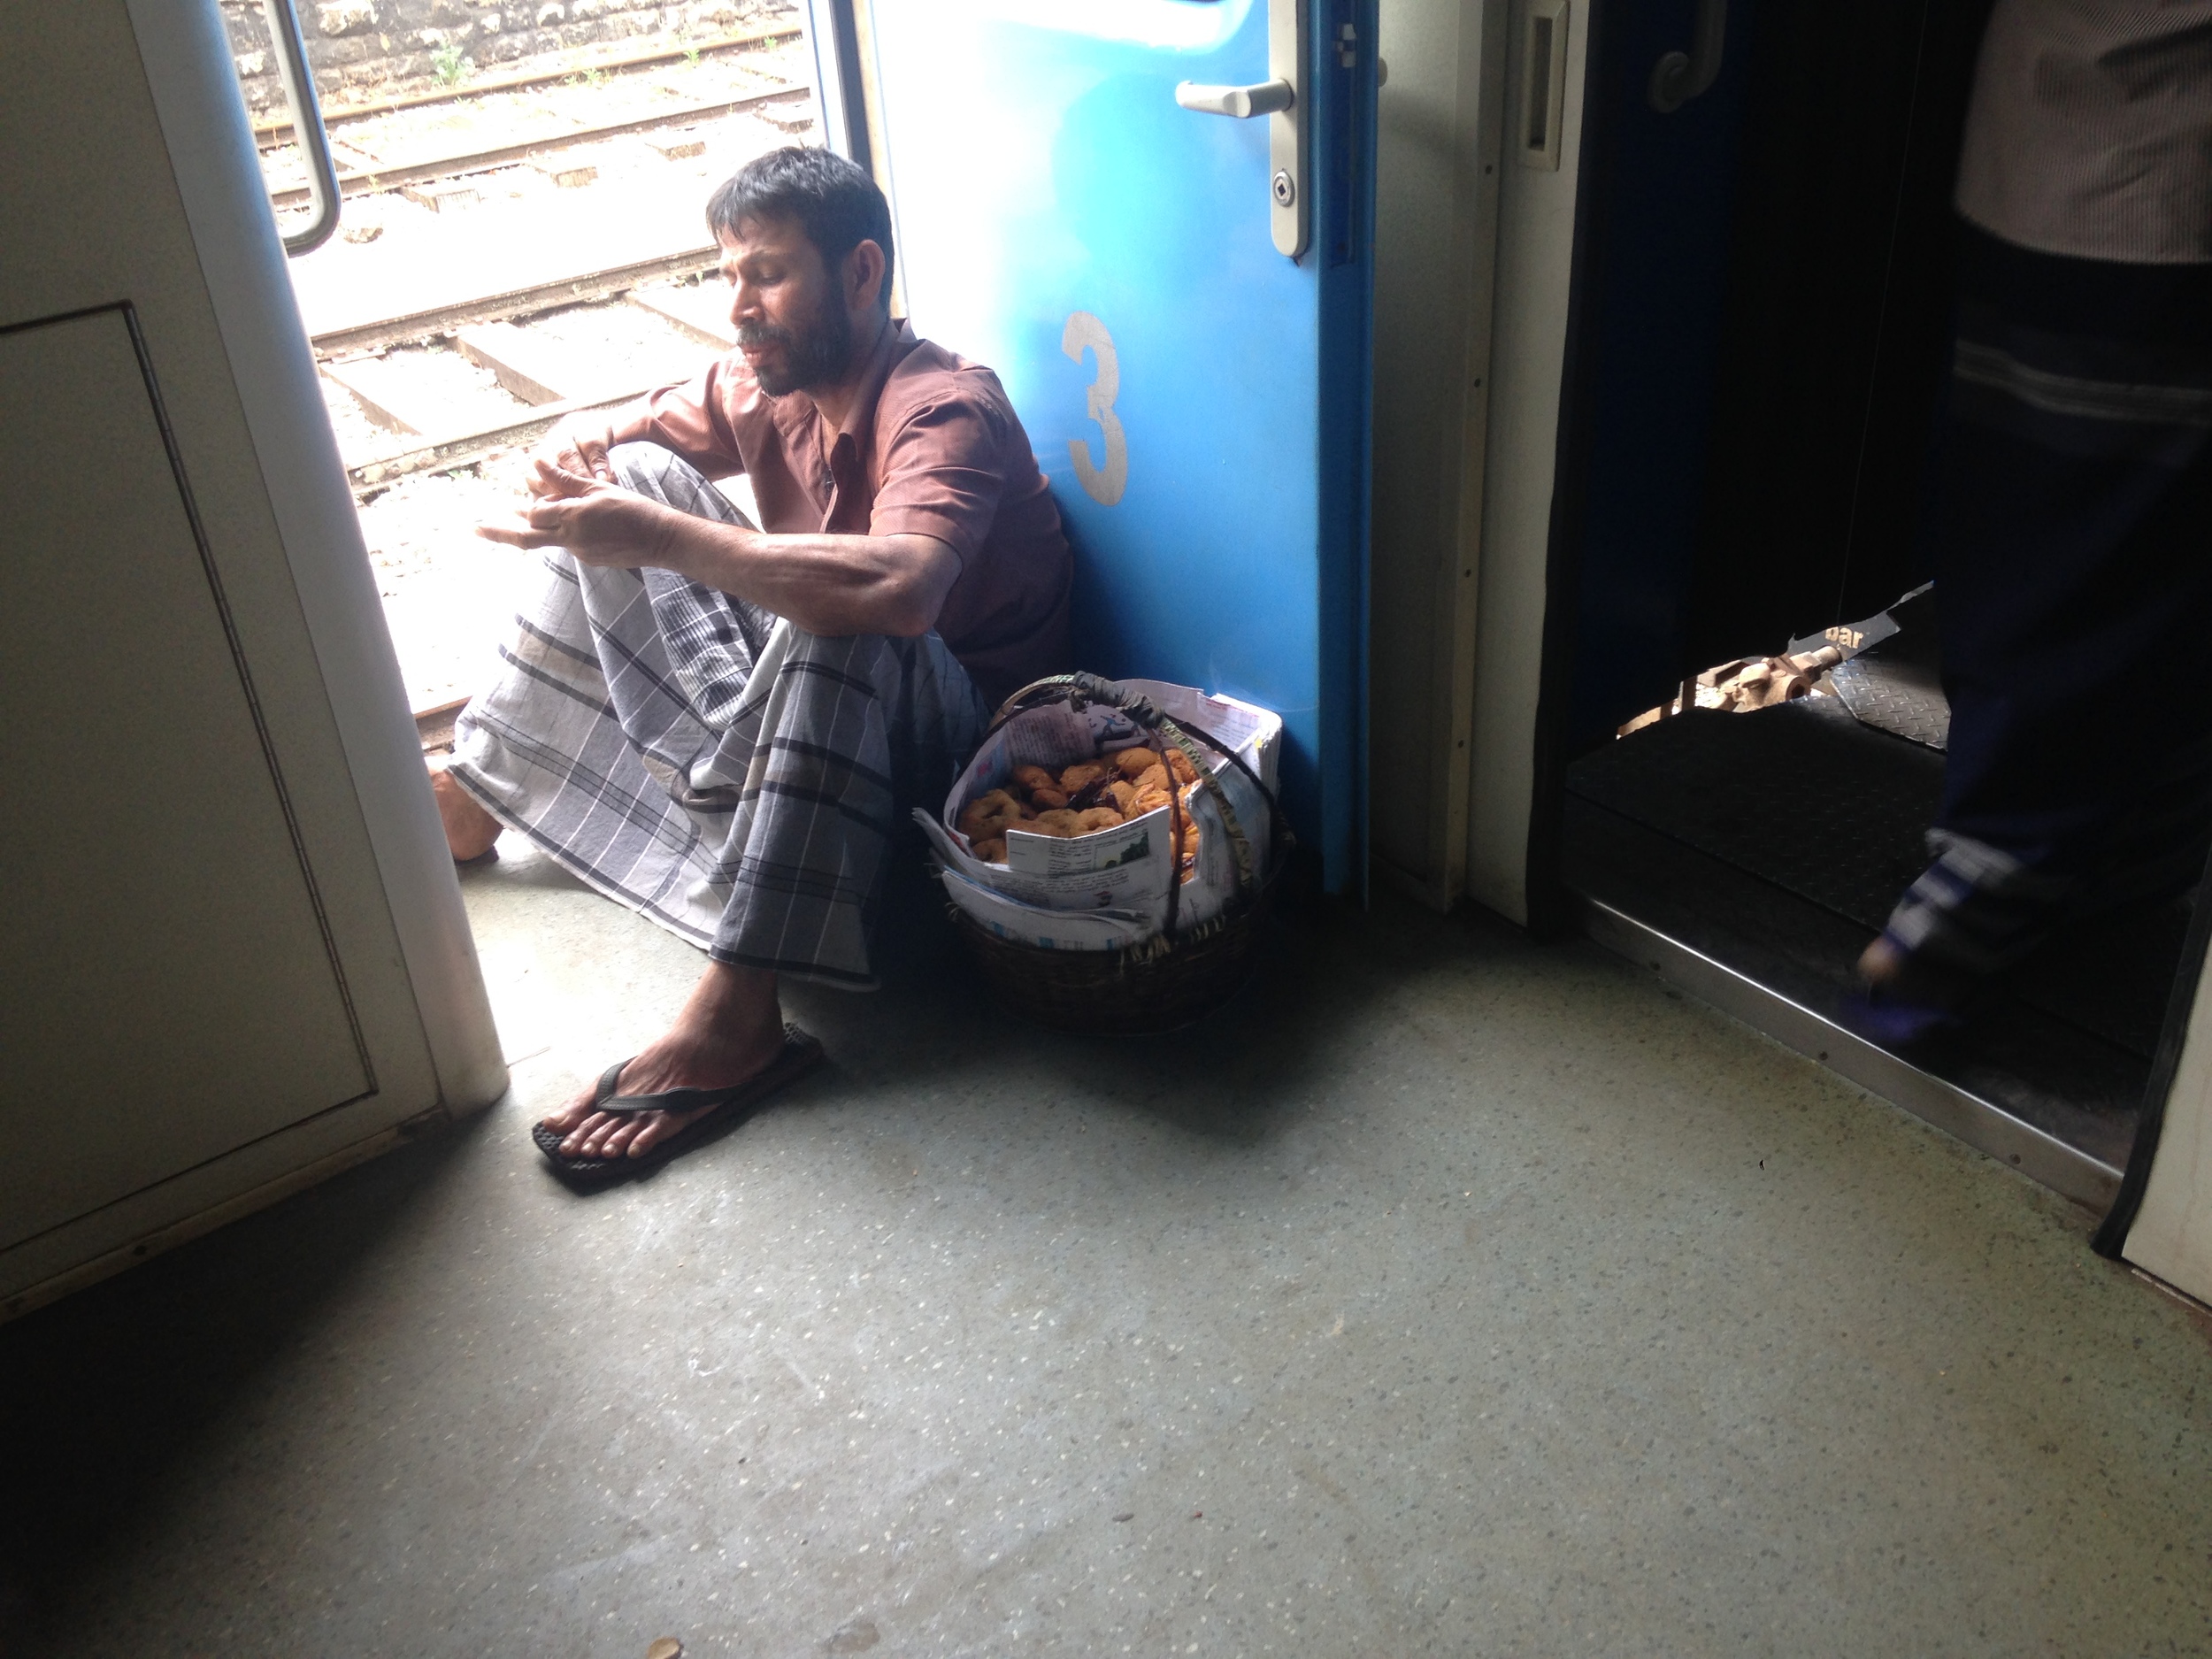  A vendor taking a break on the train. 